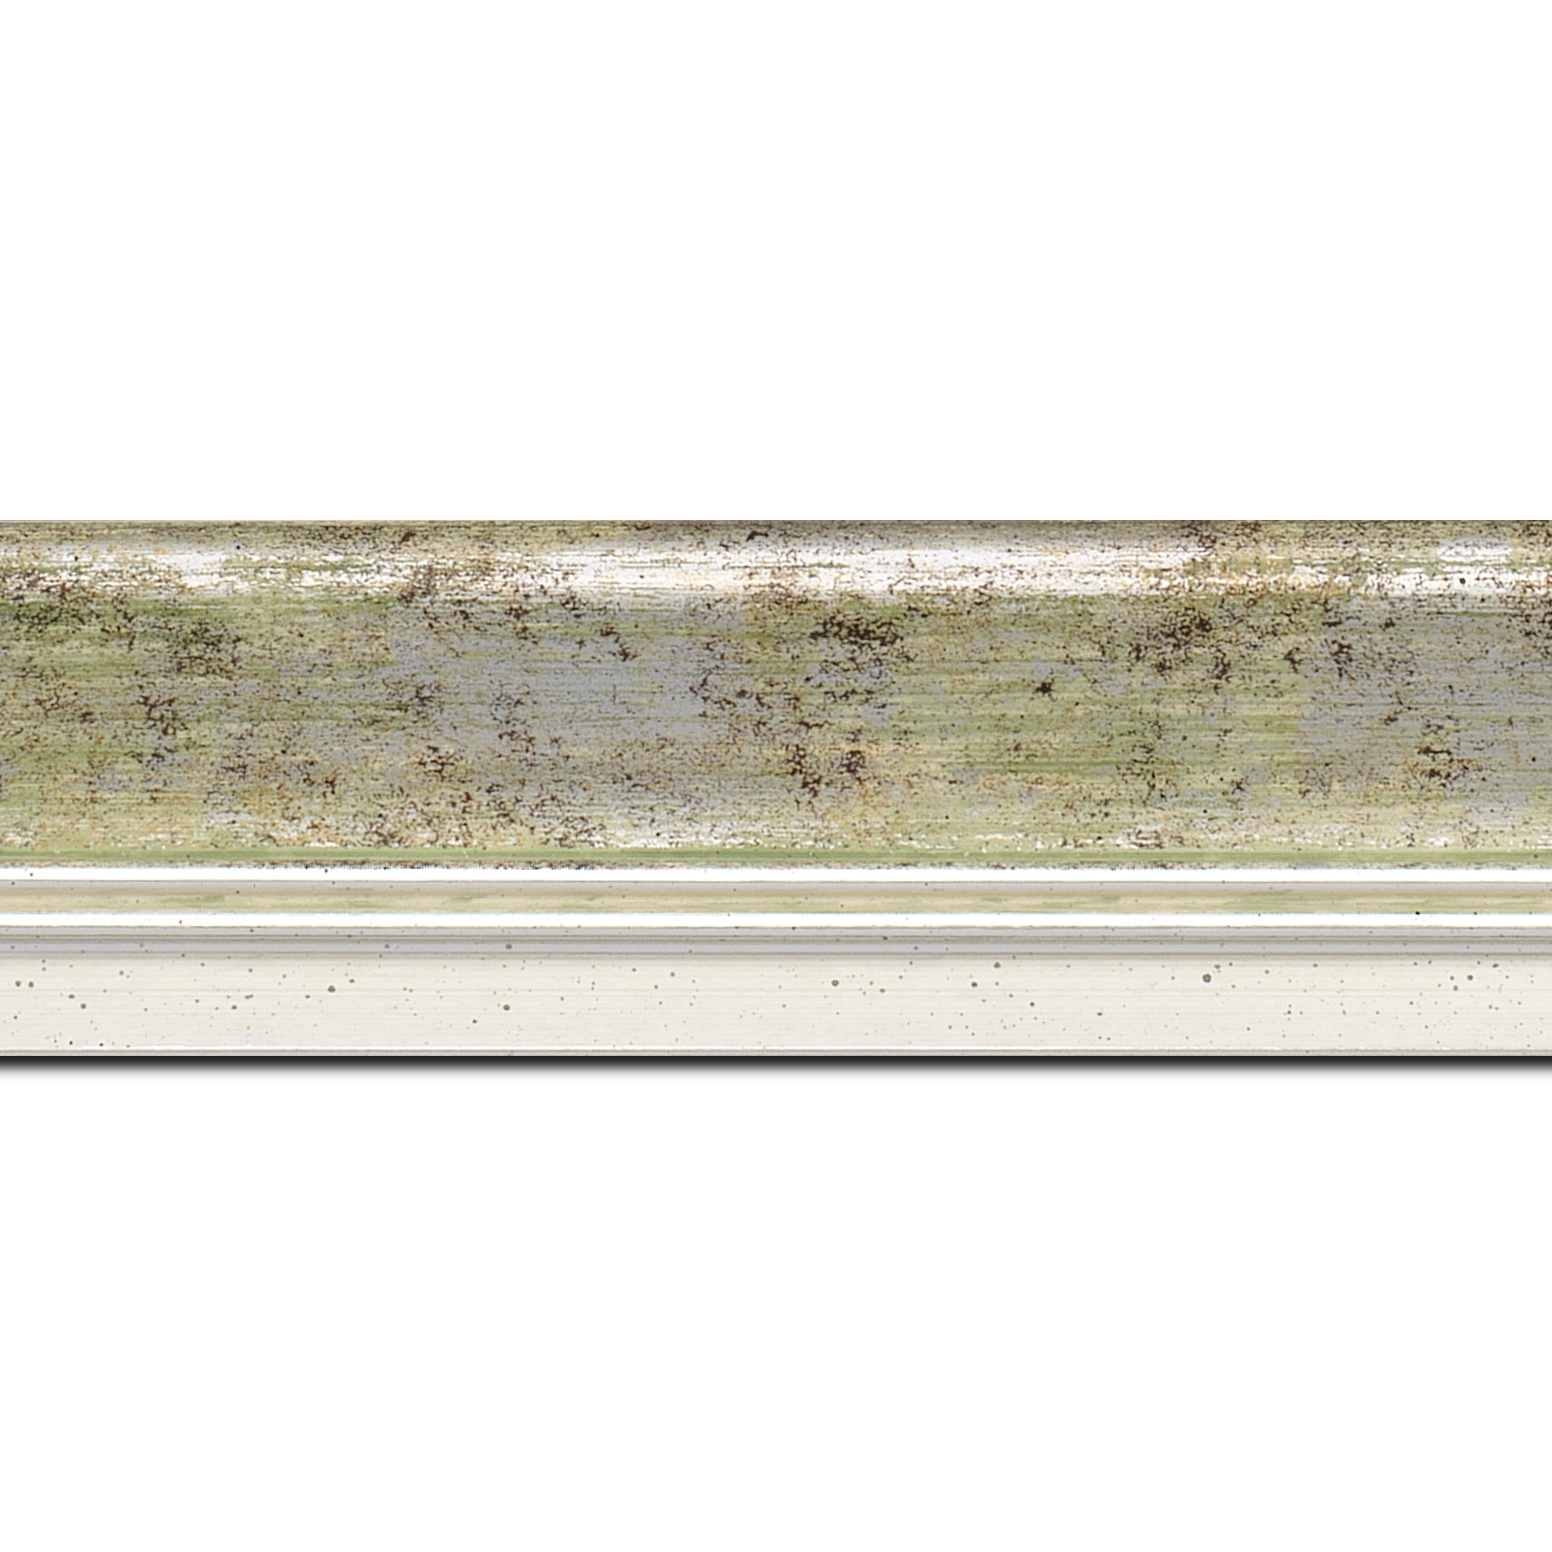 Baguette longueur 1.40m bois profil incurvé largeur 5.7cm de couleur vert fond argent marie louise blanche mouchetée filet argent intégré